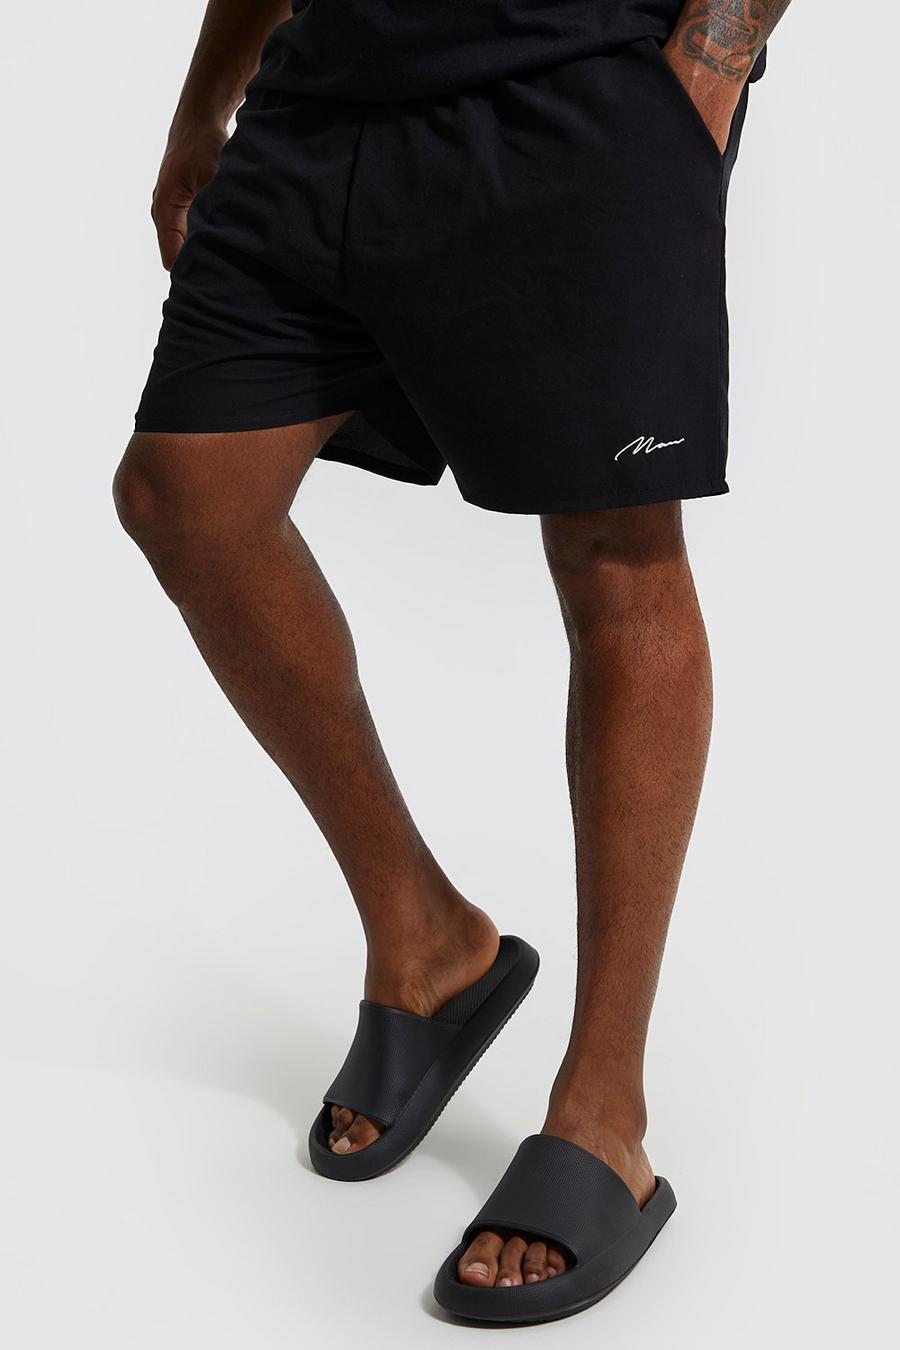 Costume a pantaloncino Plus Size in fibre riciclate con firma Man, Black negro